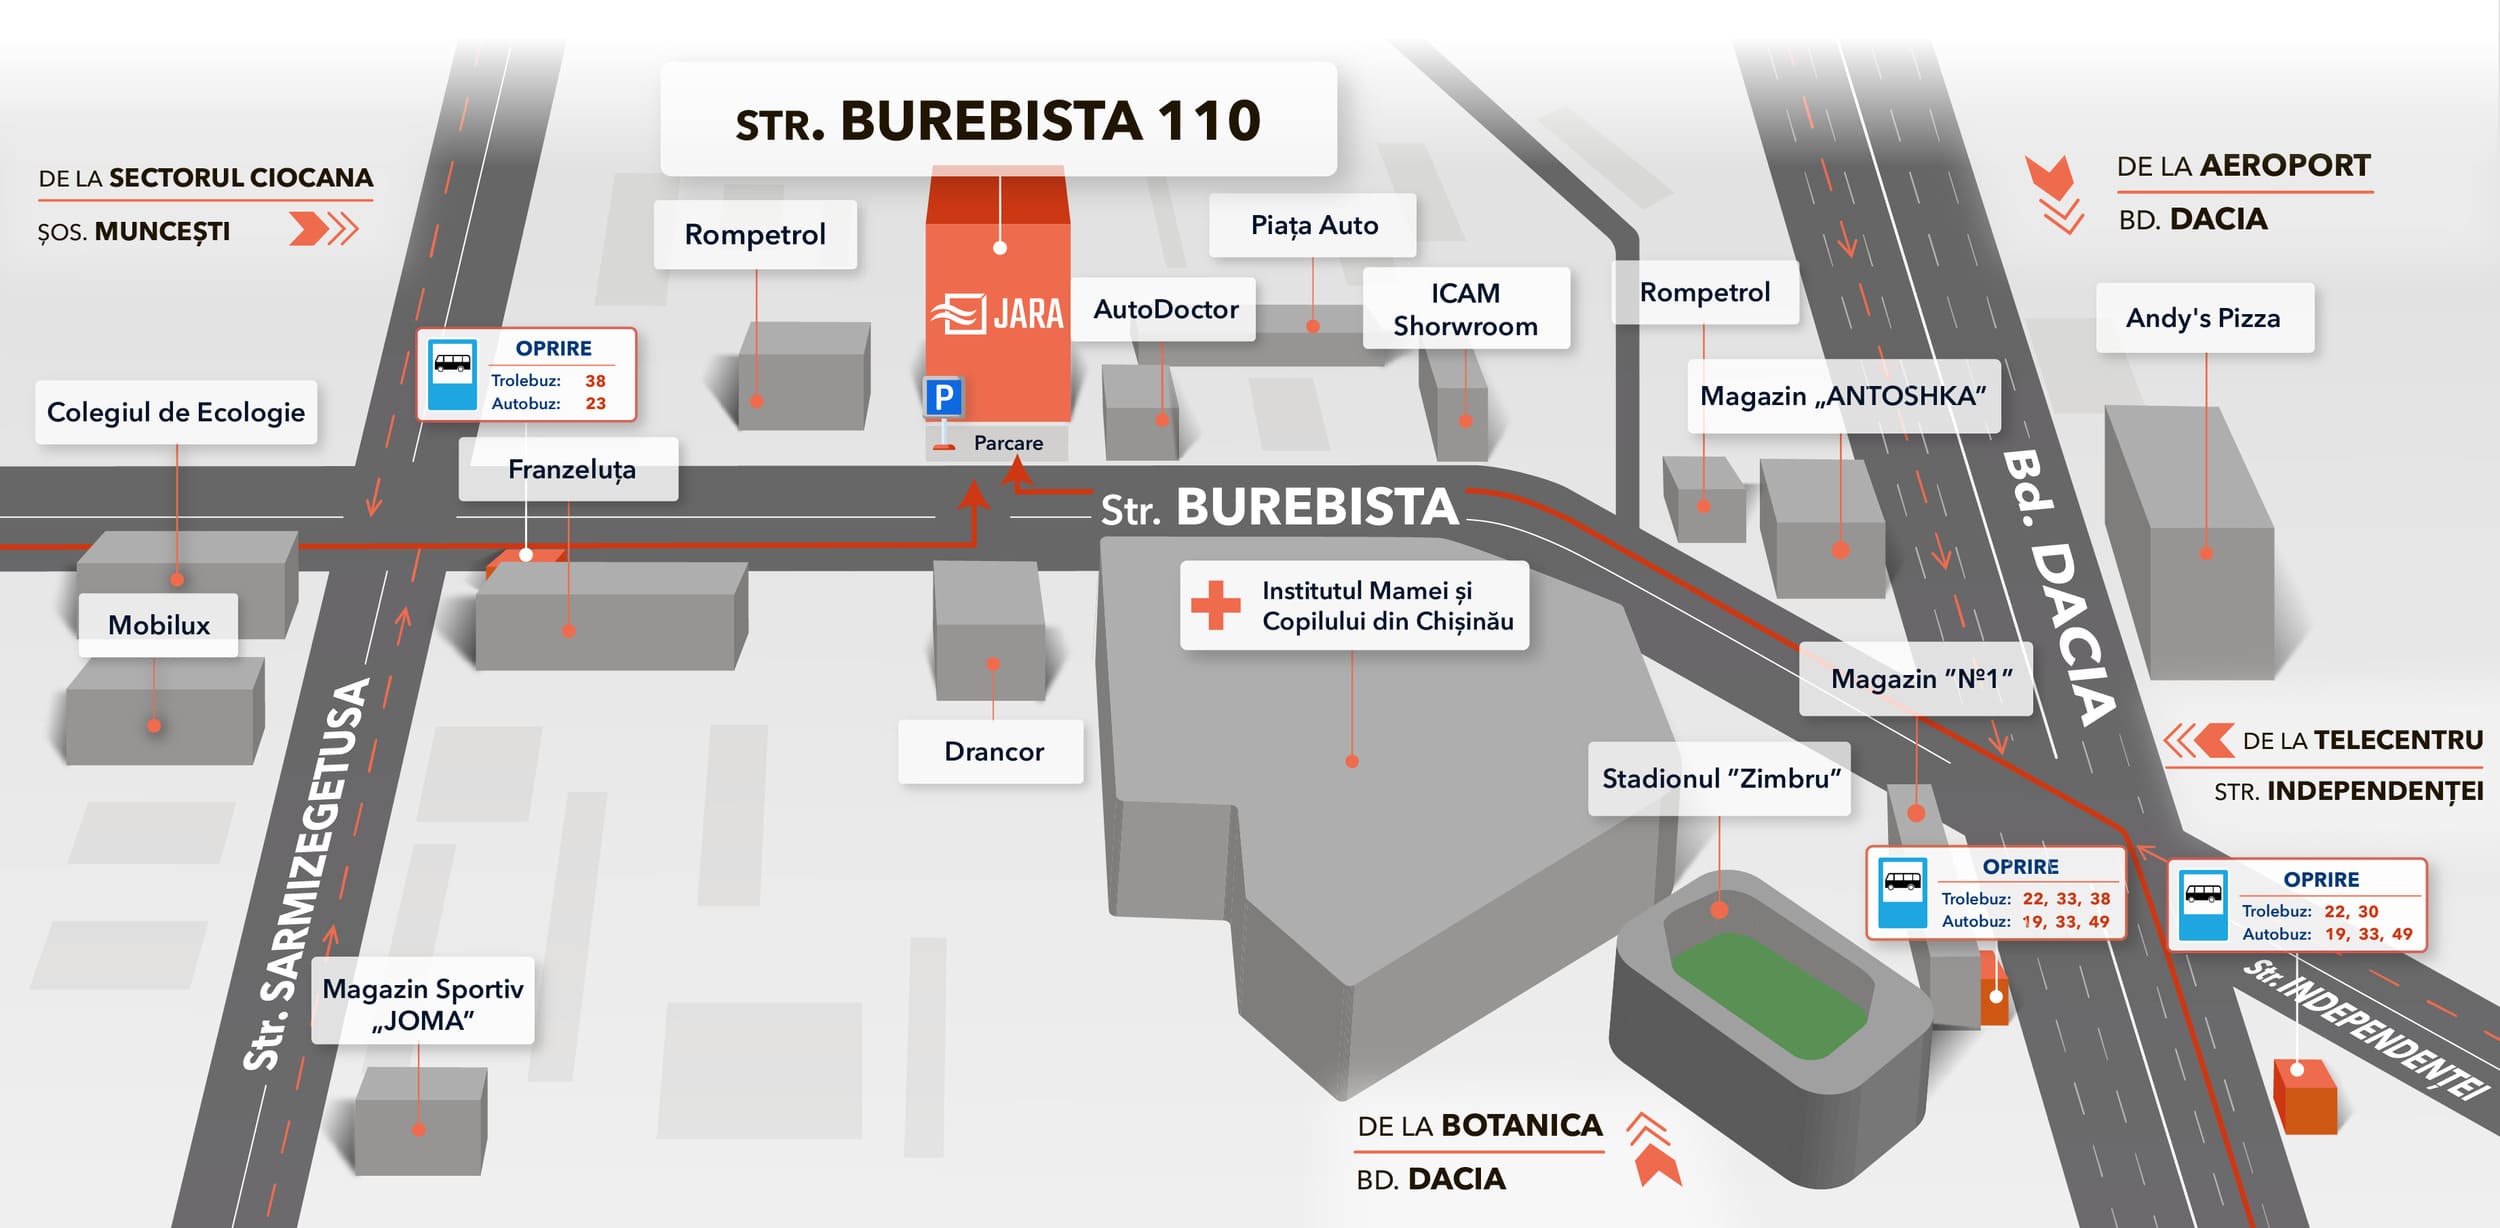 Vezi cum găsești adresa magazinului JARA Chișinău pe hartă